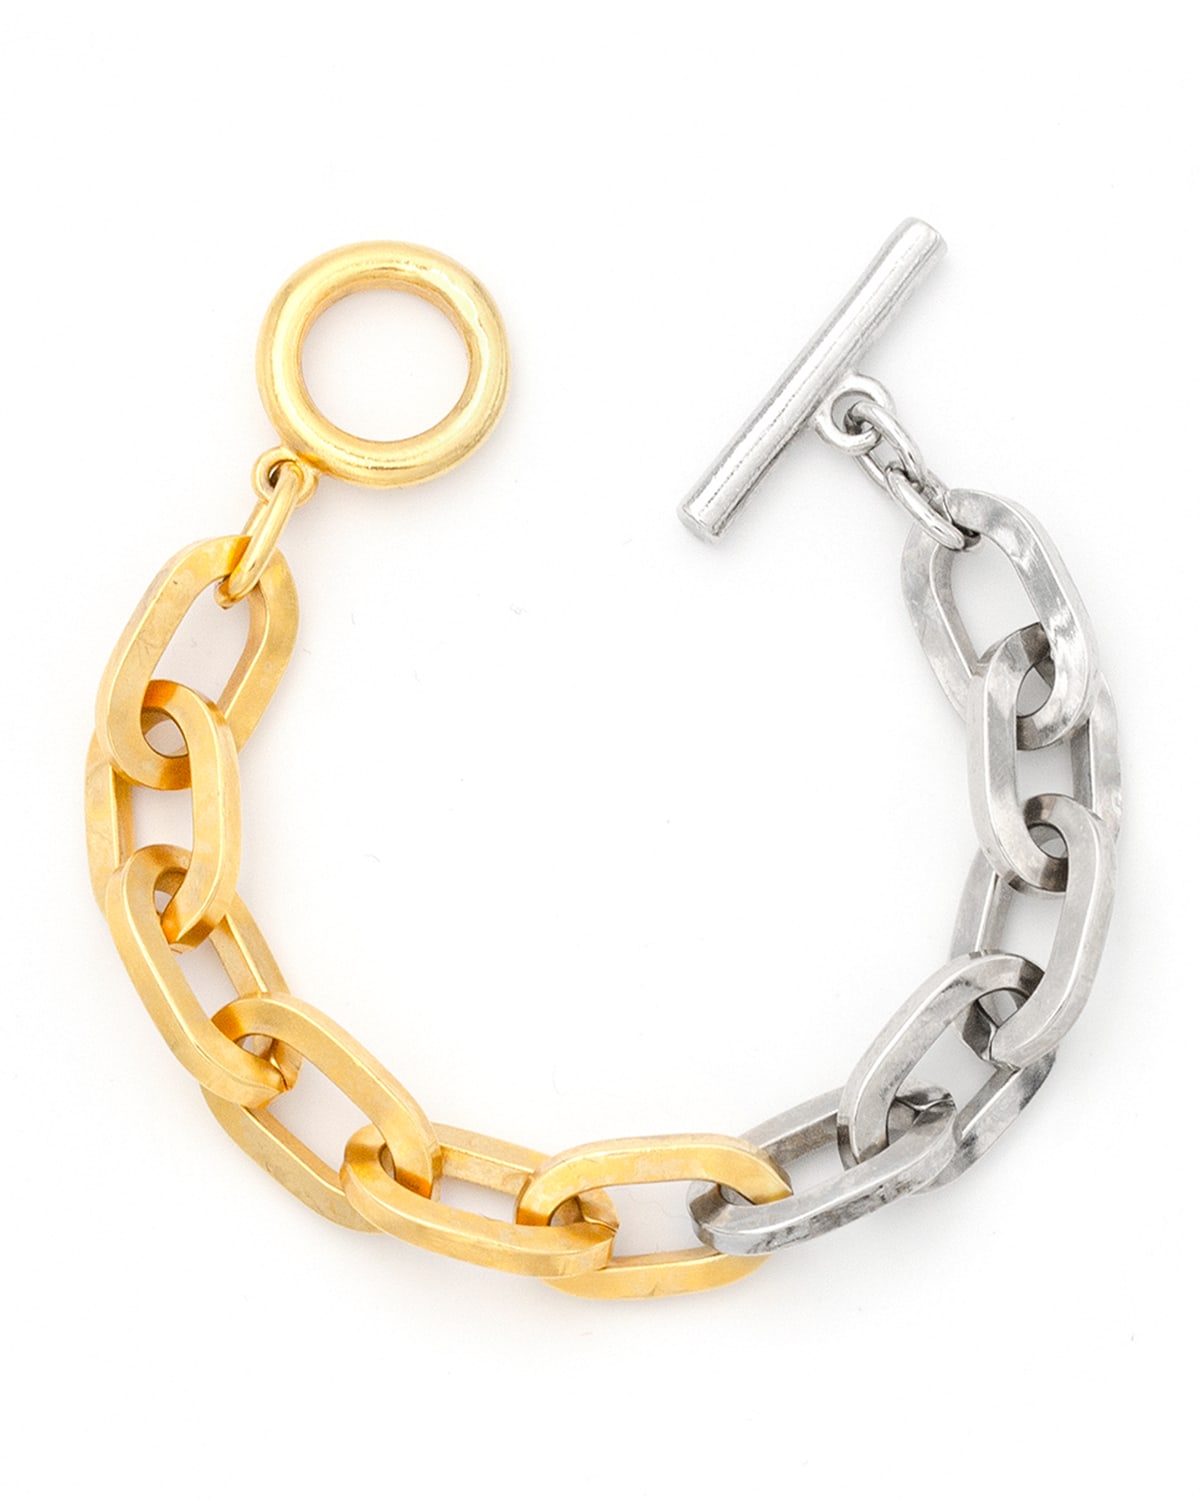 Two-Tone Link Bracelet, 0.5"W